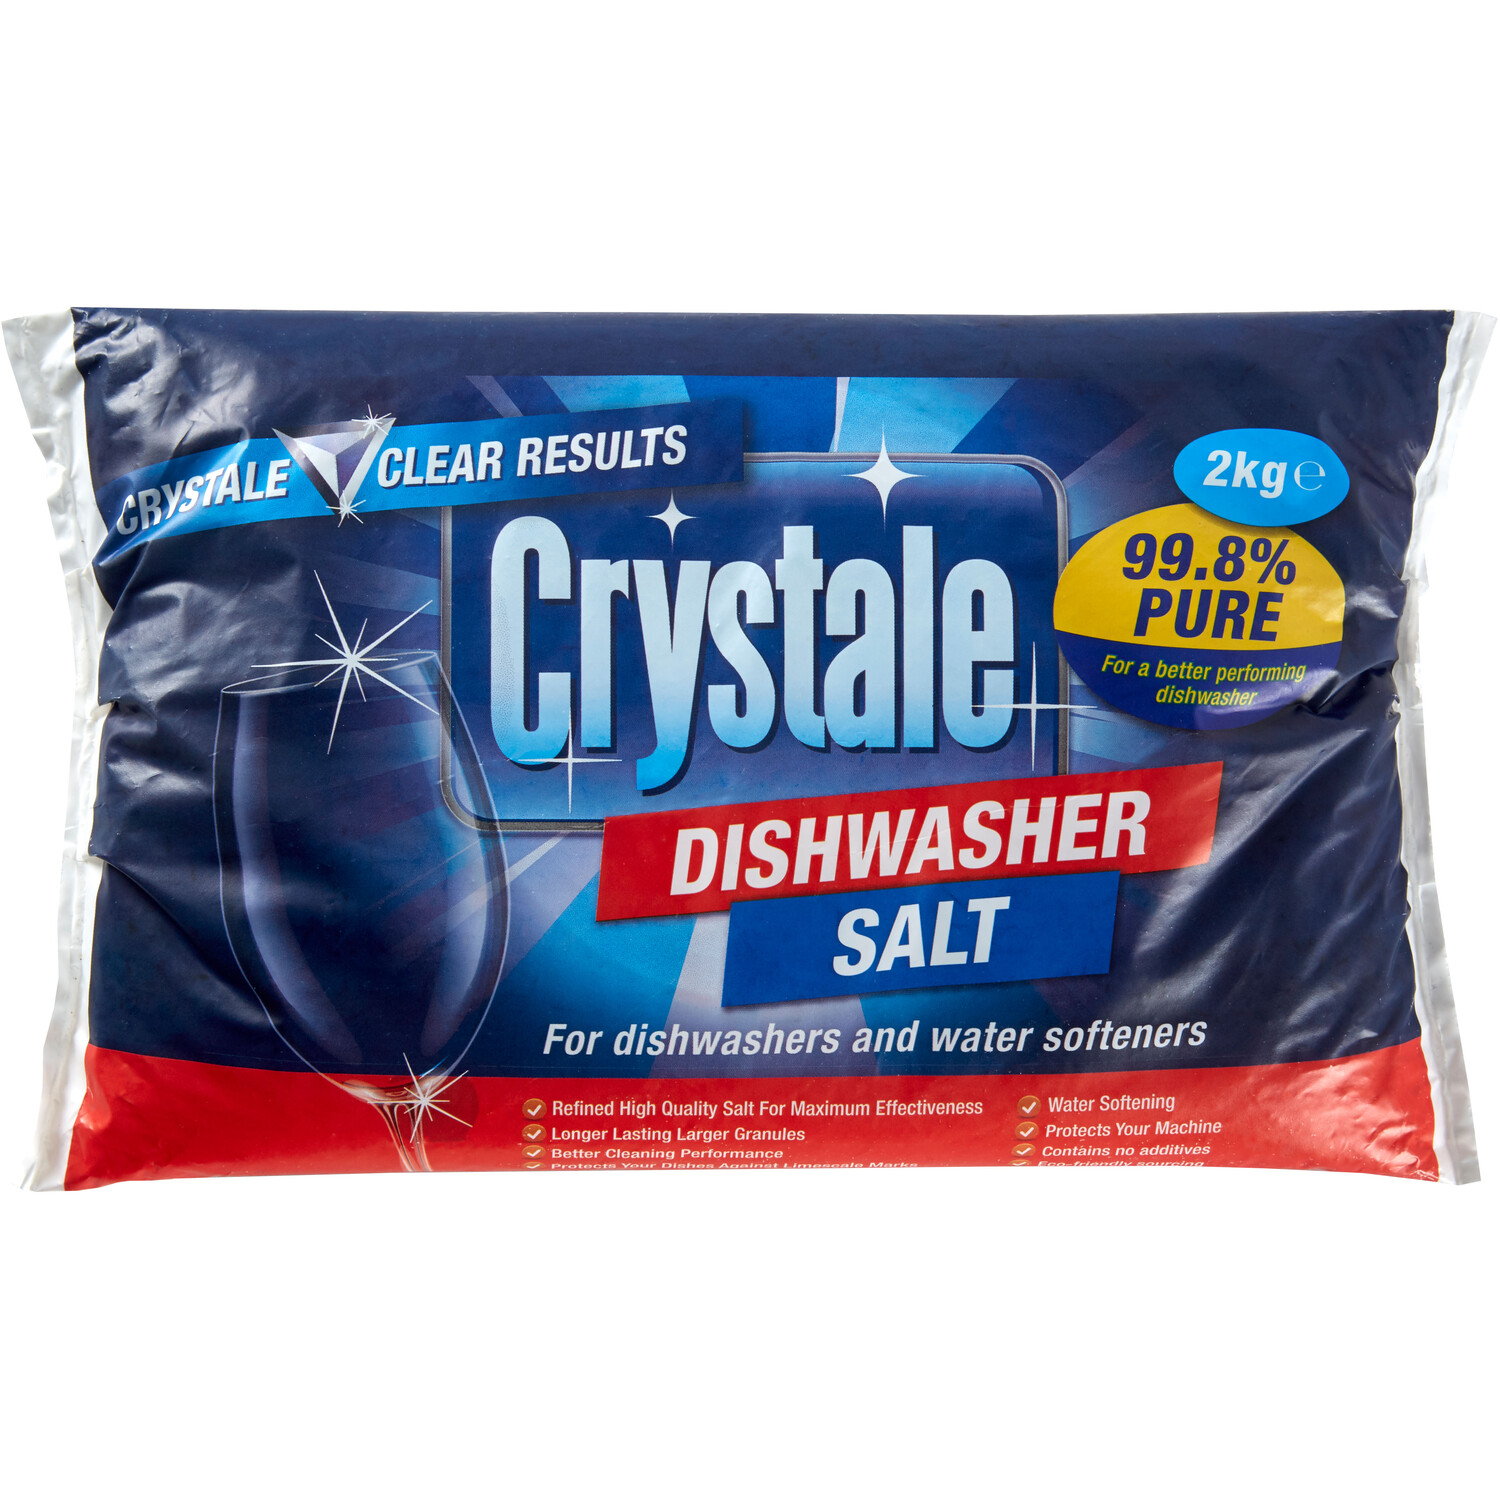 Crystale Dishwasher Salt 2kg Image